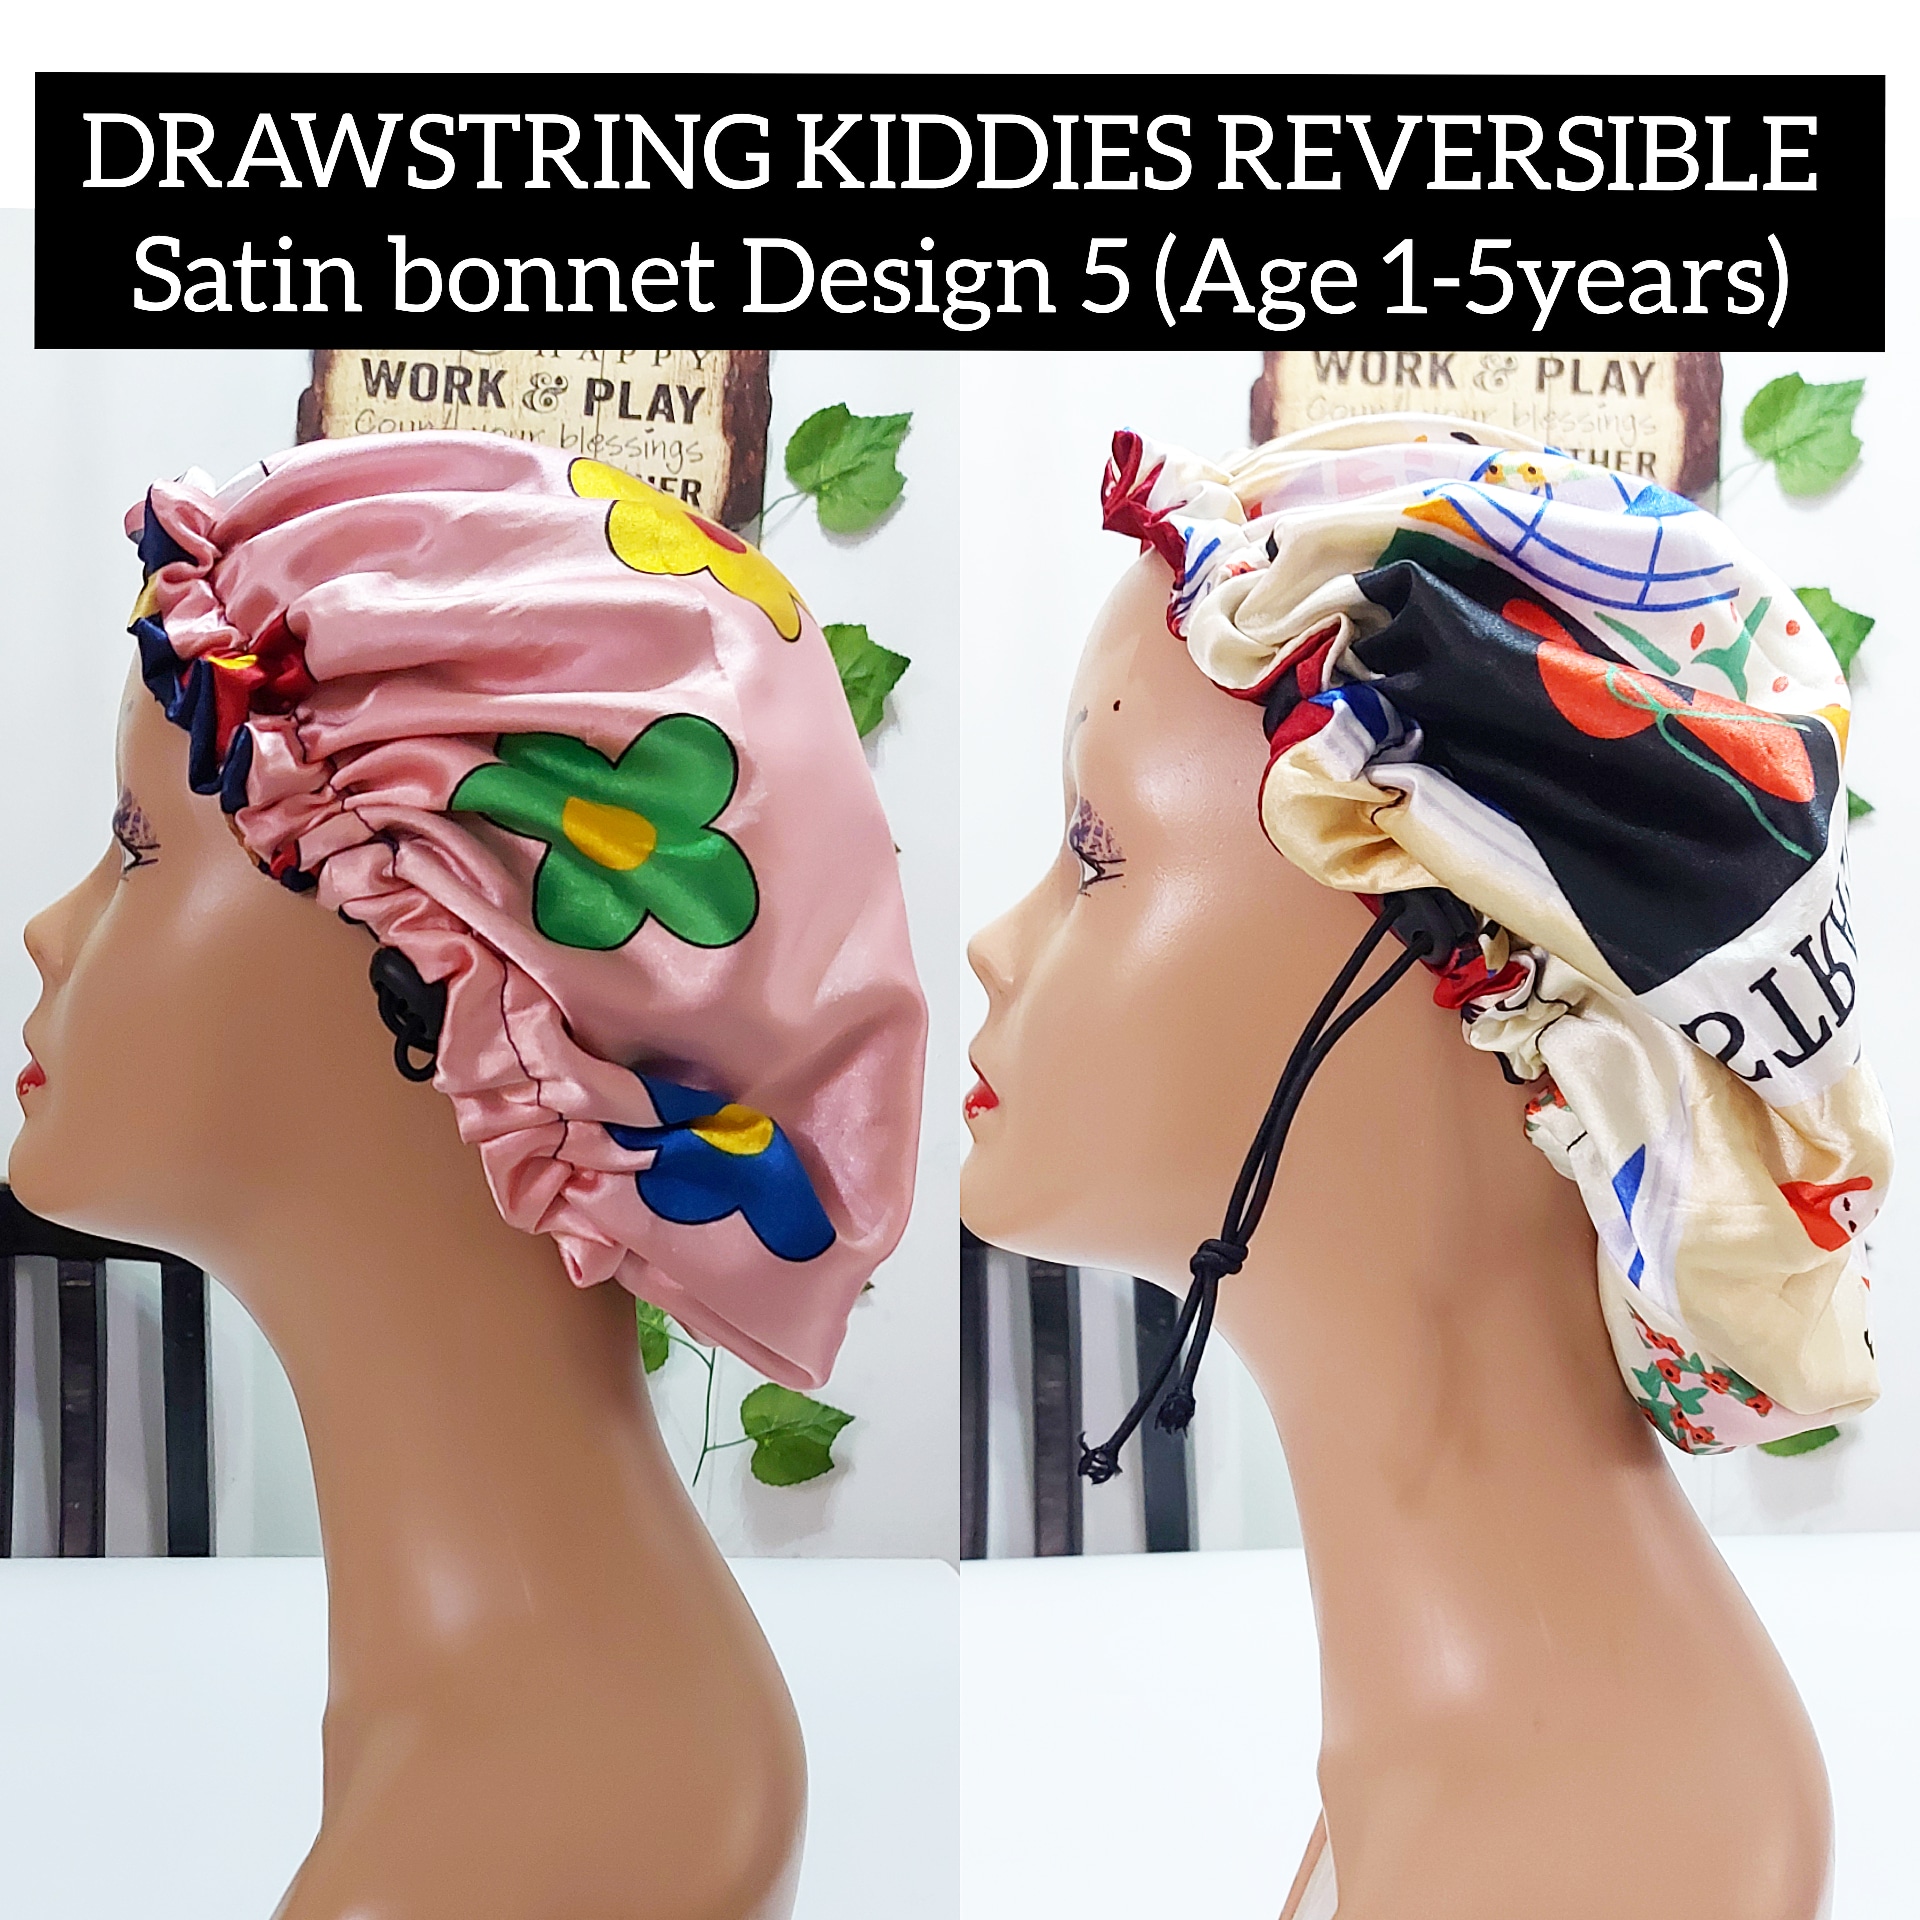 Kiddies drawstring reversible satin bonnet design 5